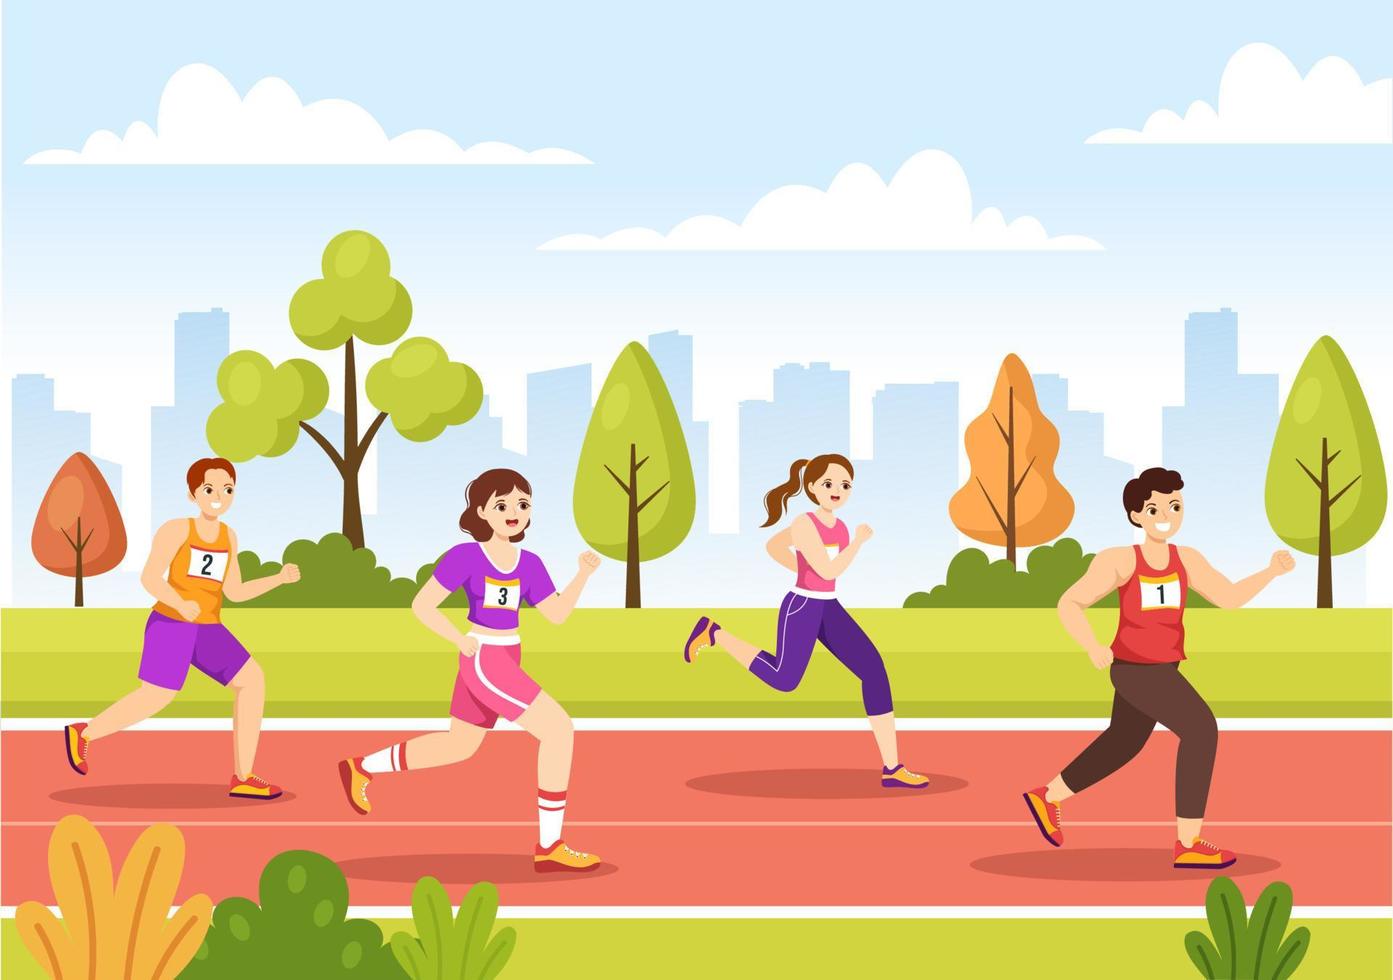 maraton lopp illustration med människor löpning, joggning sport turnering och springa till nå de Avsluta linje i platt tecknad serie hand dragen mall vektor